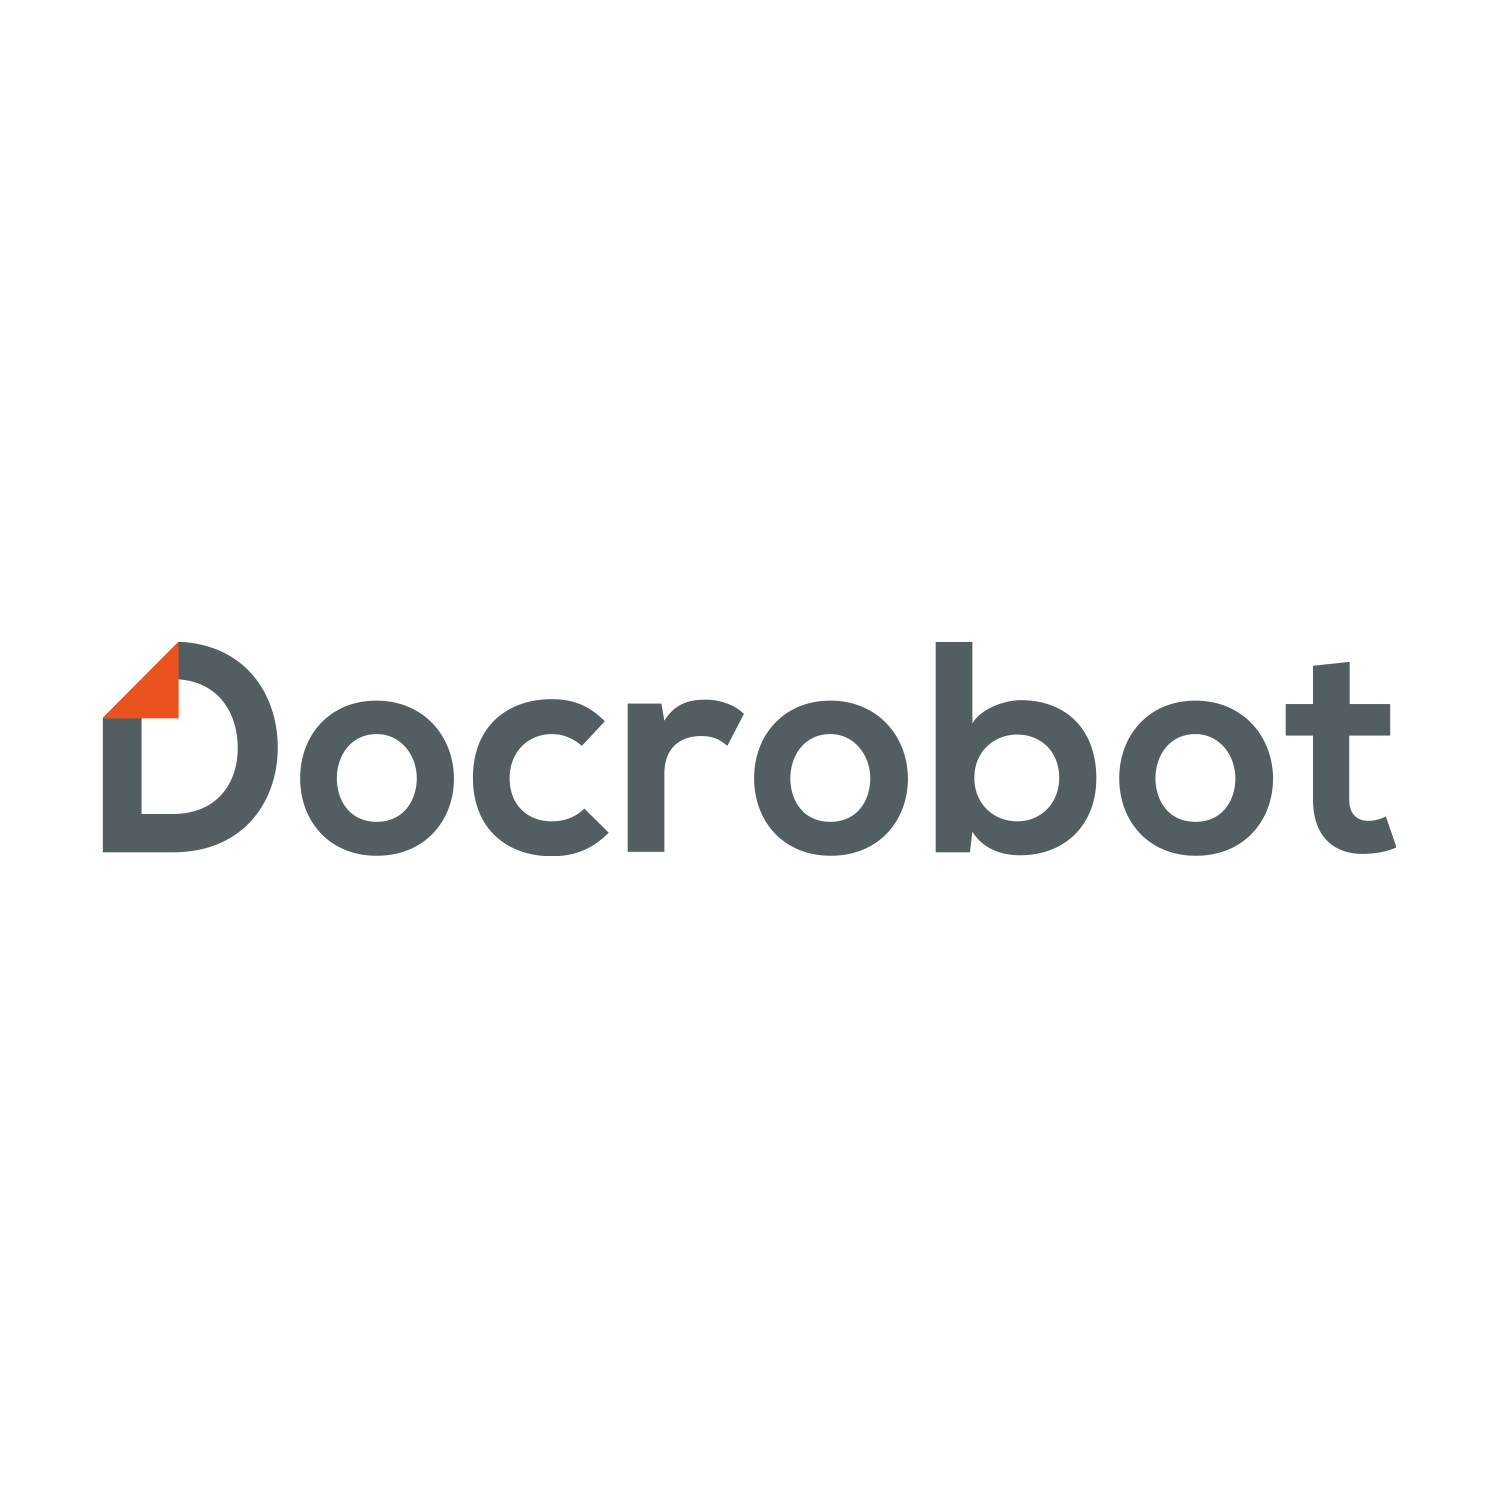 DocBot